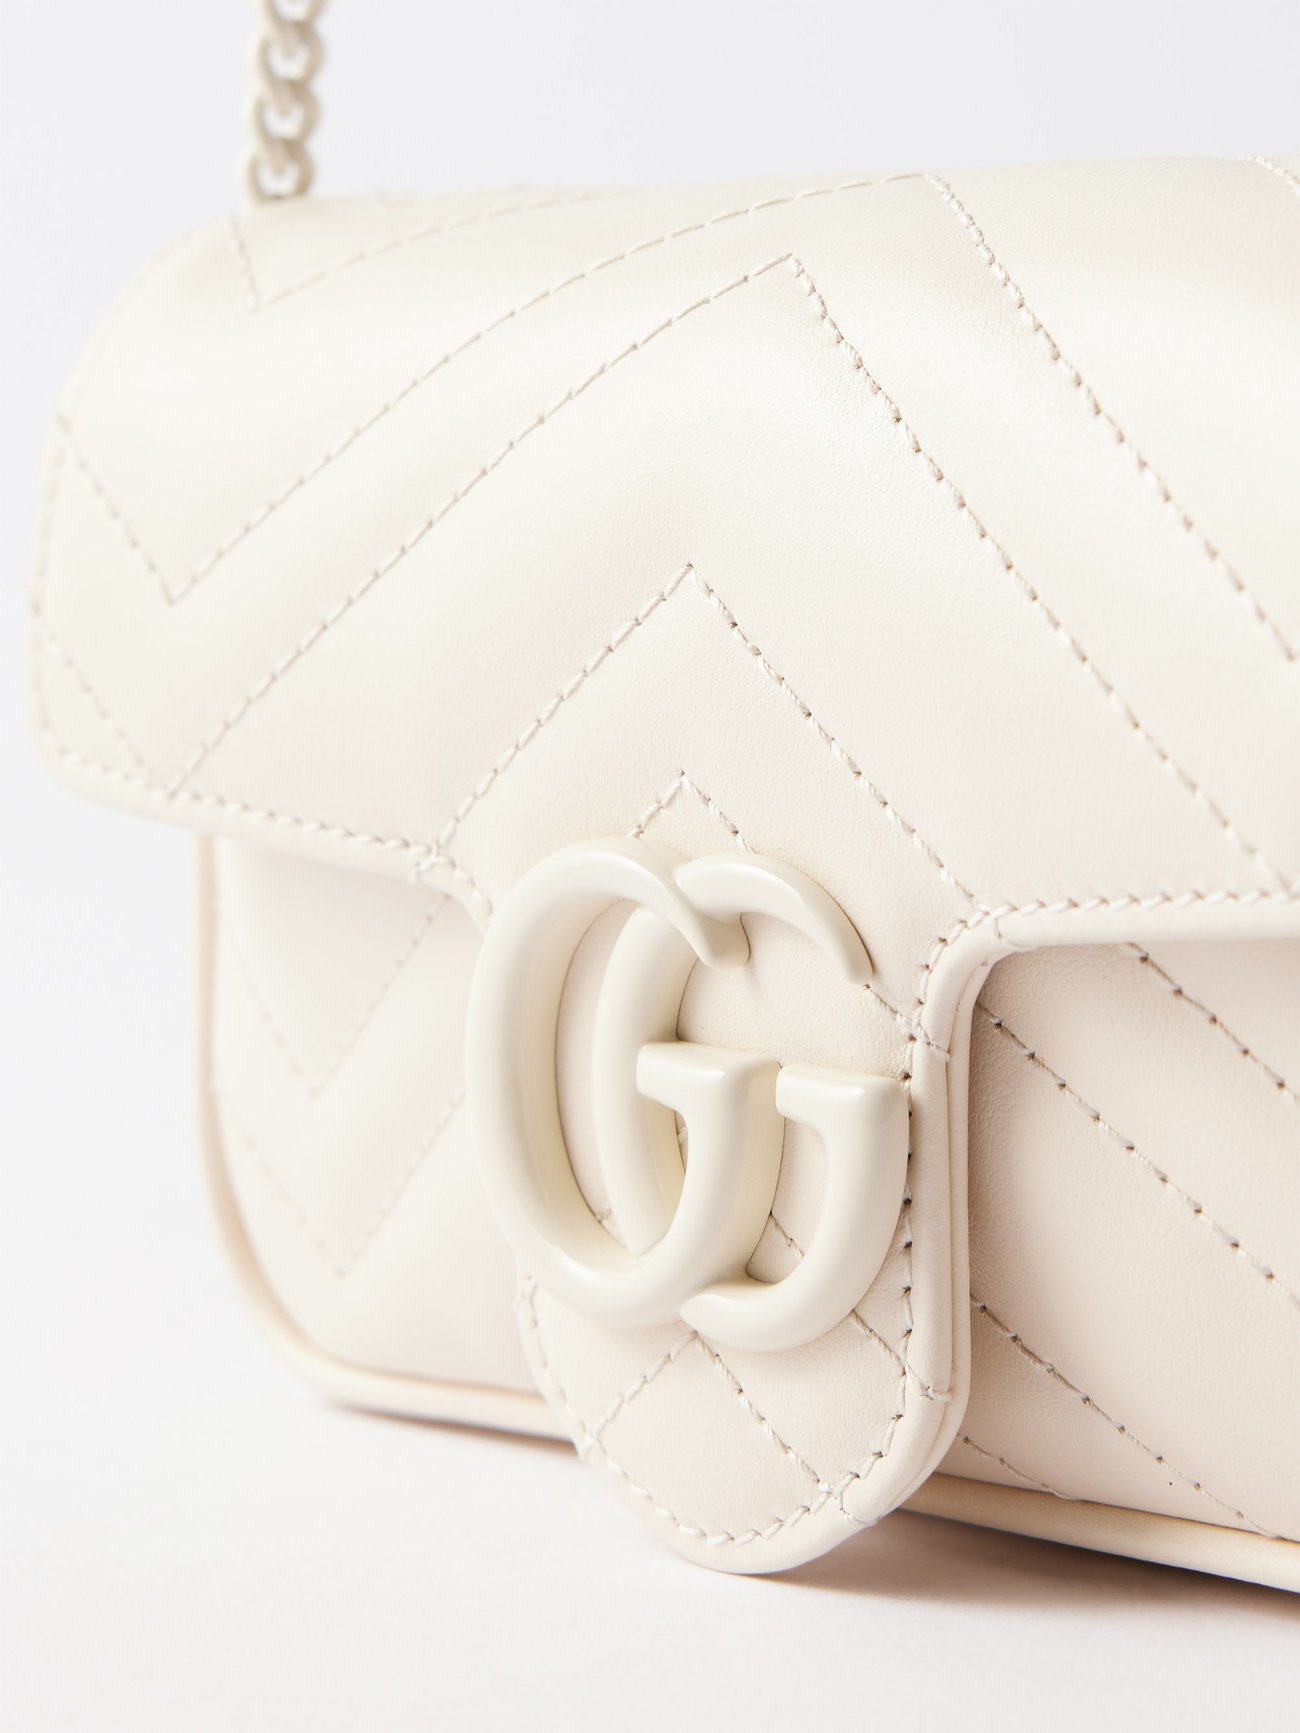 White GG Marmont super mini leather cross-body bag, Gucci